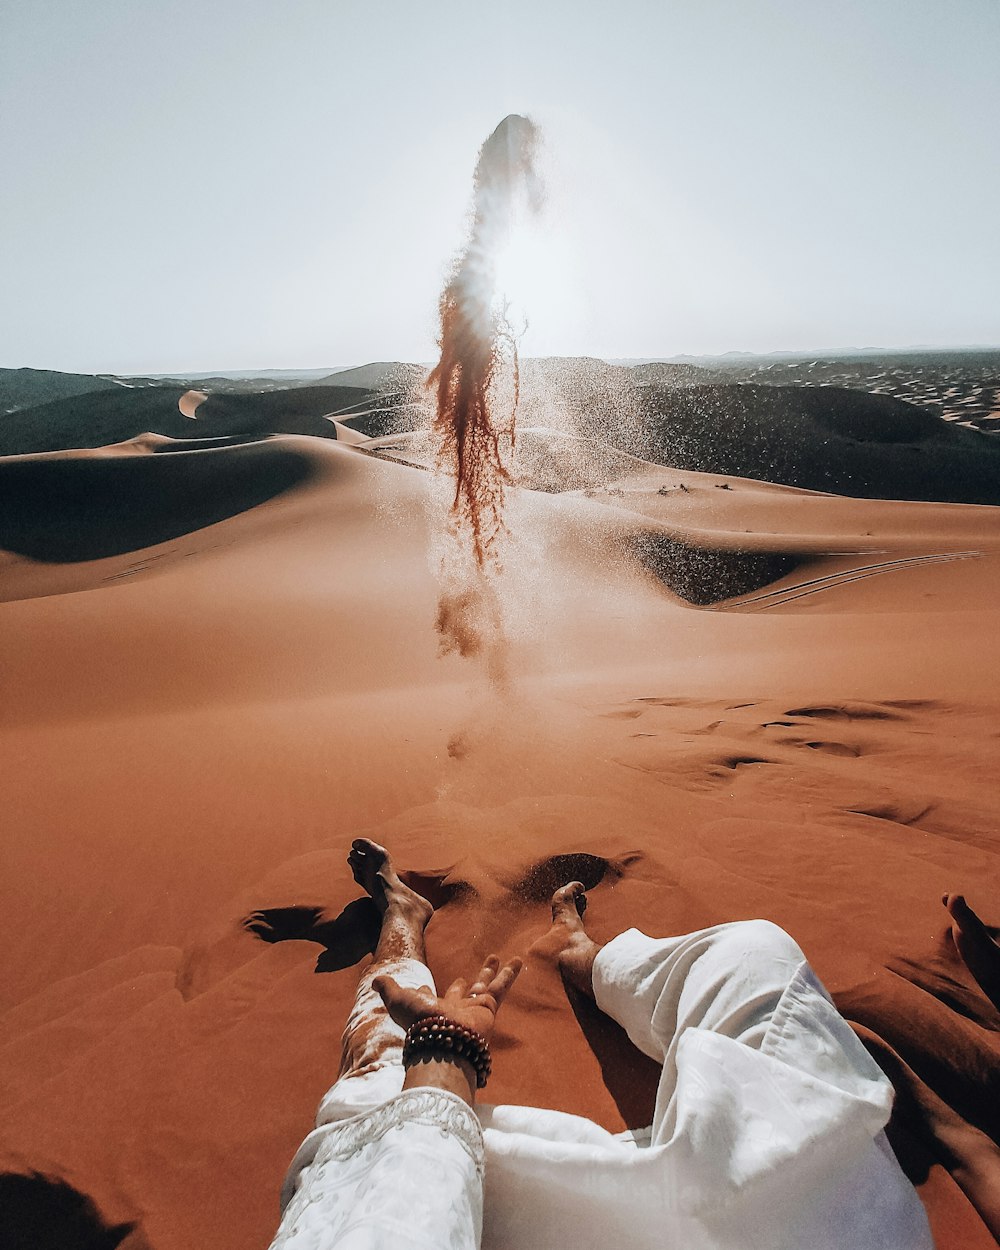 persona in pantaloni bianchi seduta su sabbia marrone durante il giorno